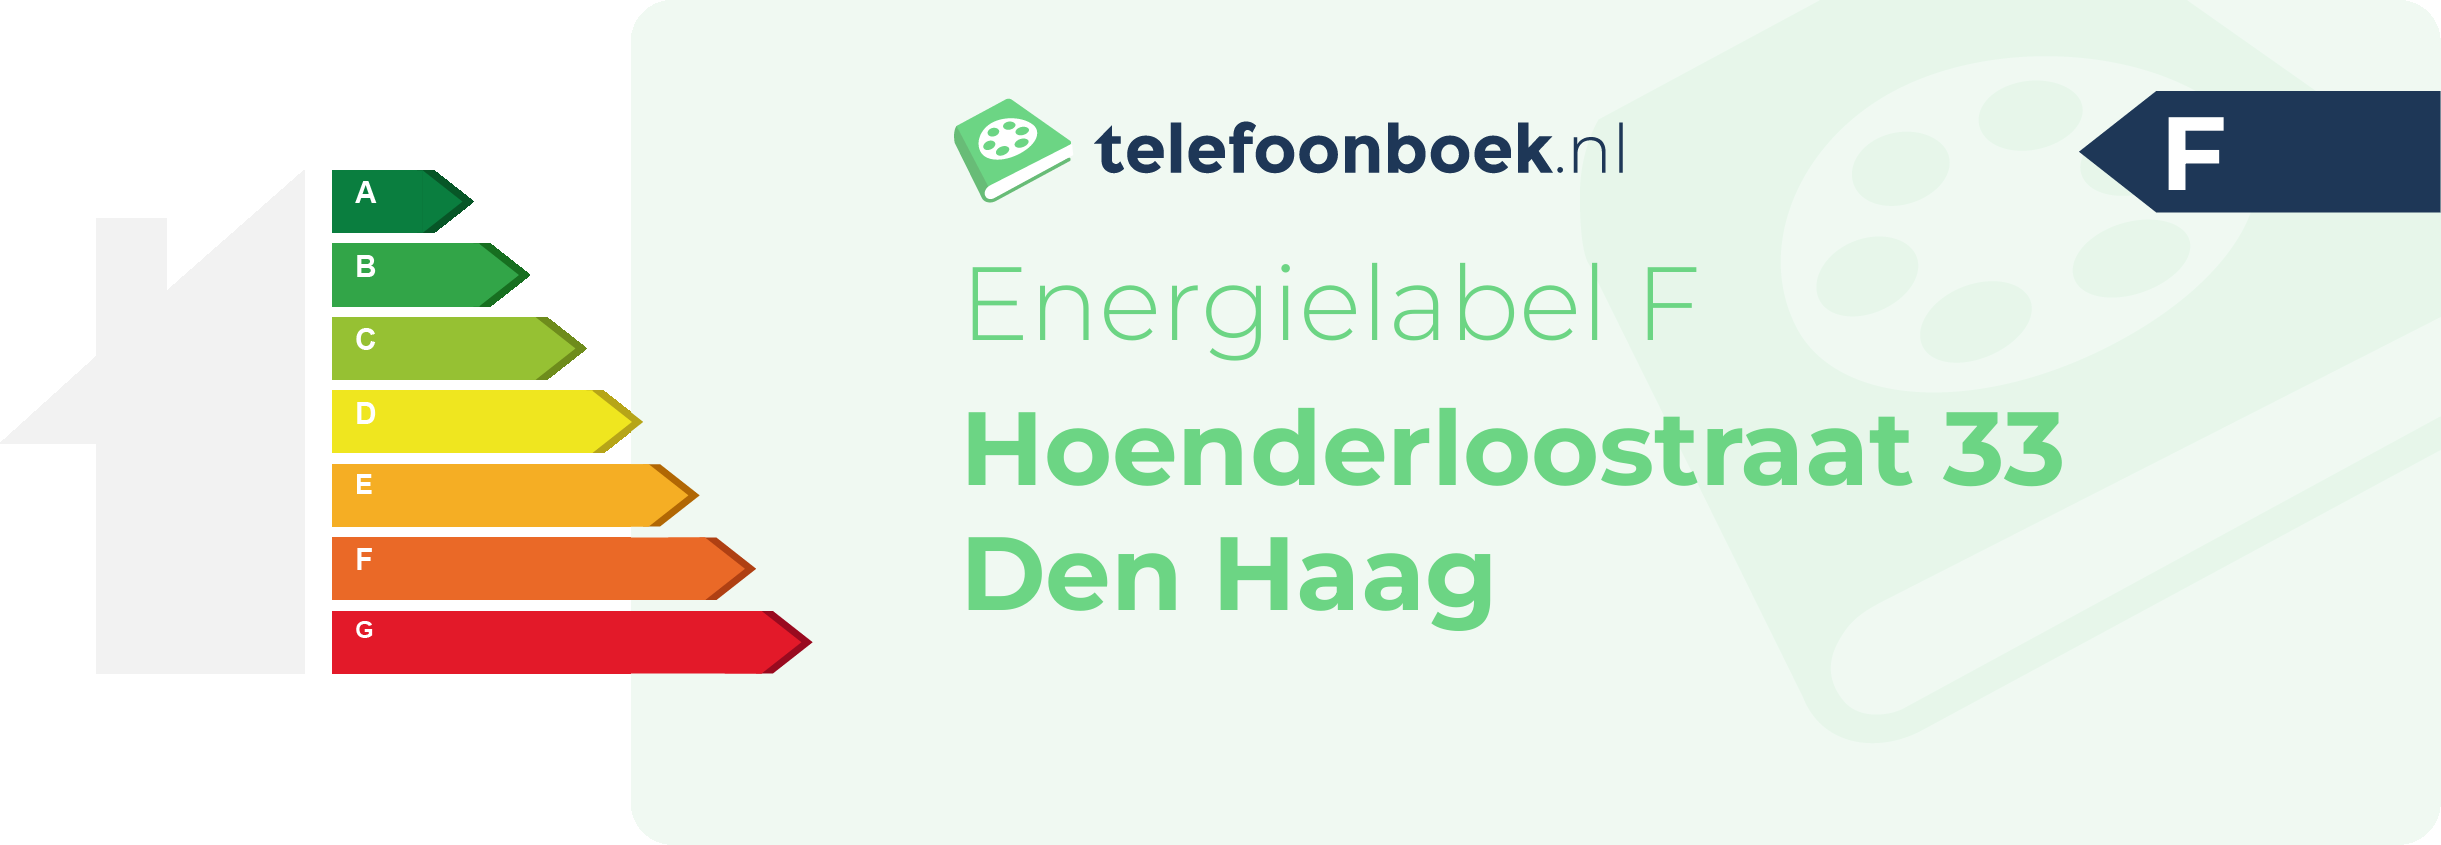 Energielabel Hoenderloostraat 33 Den Haag